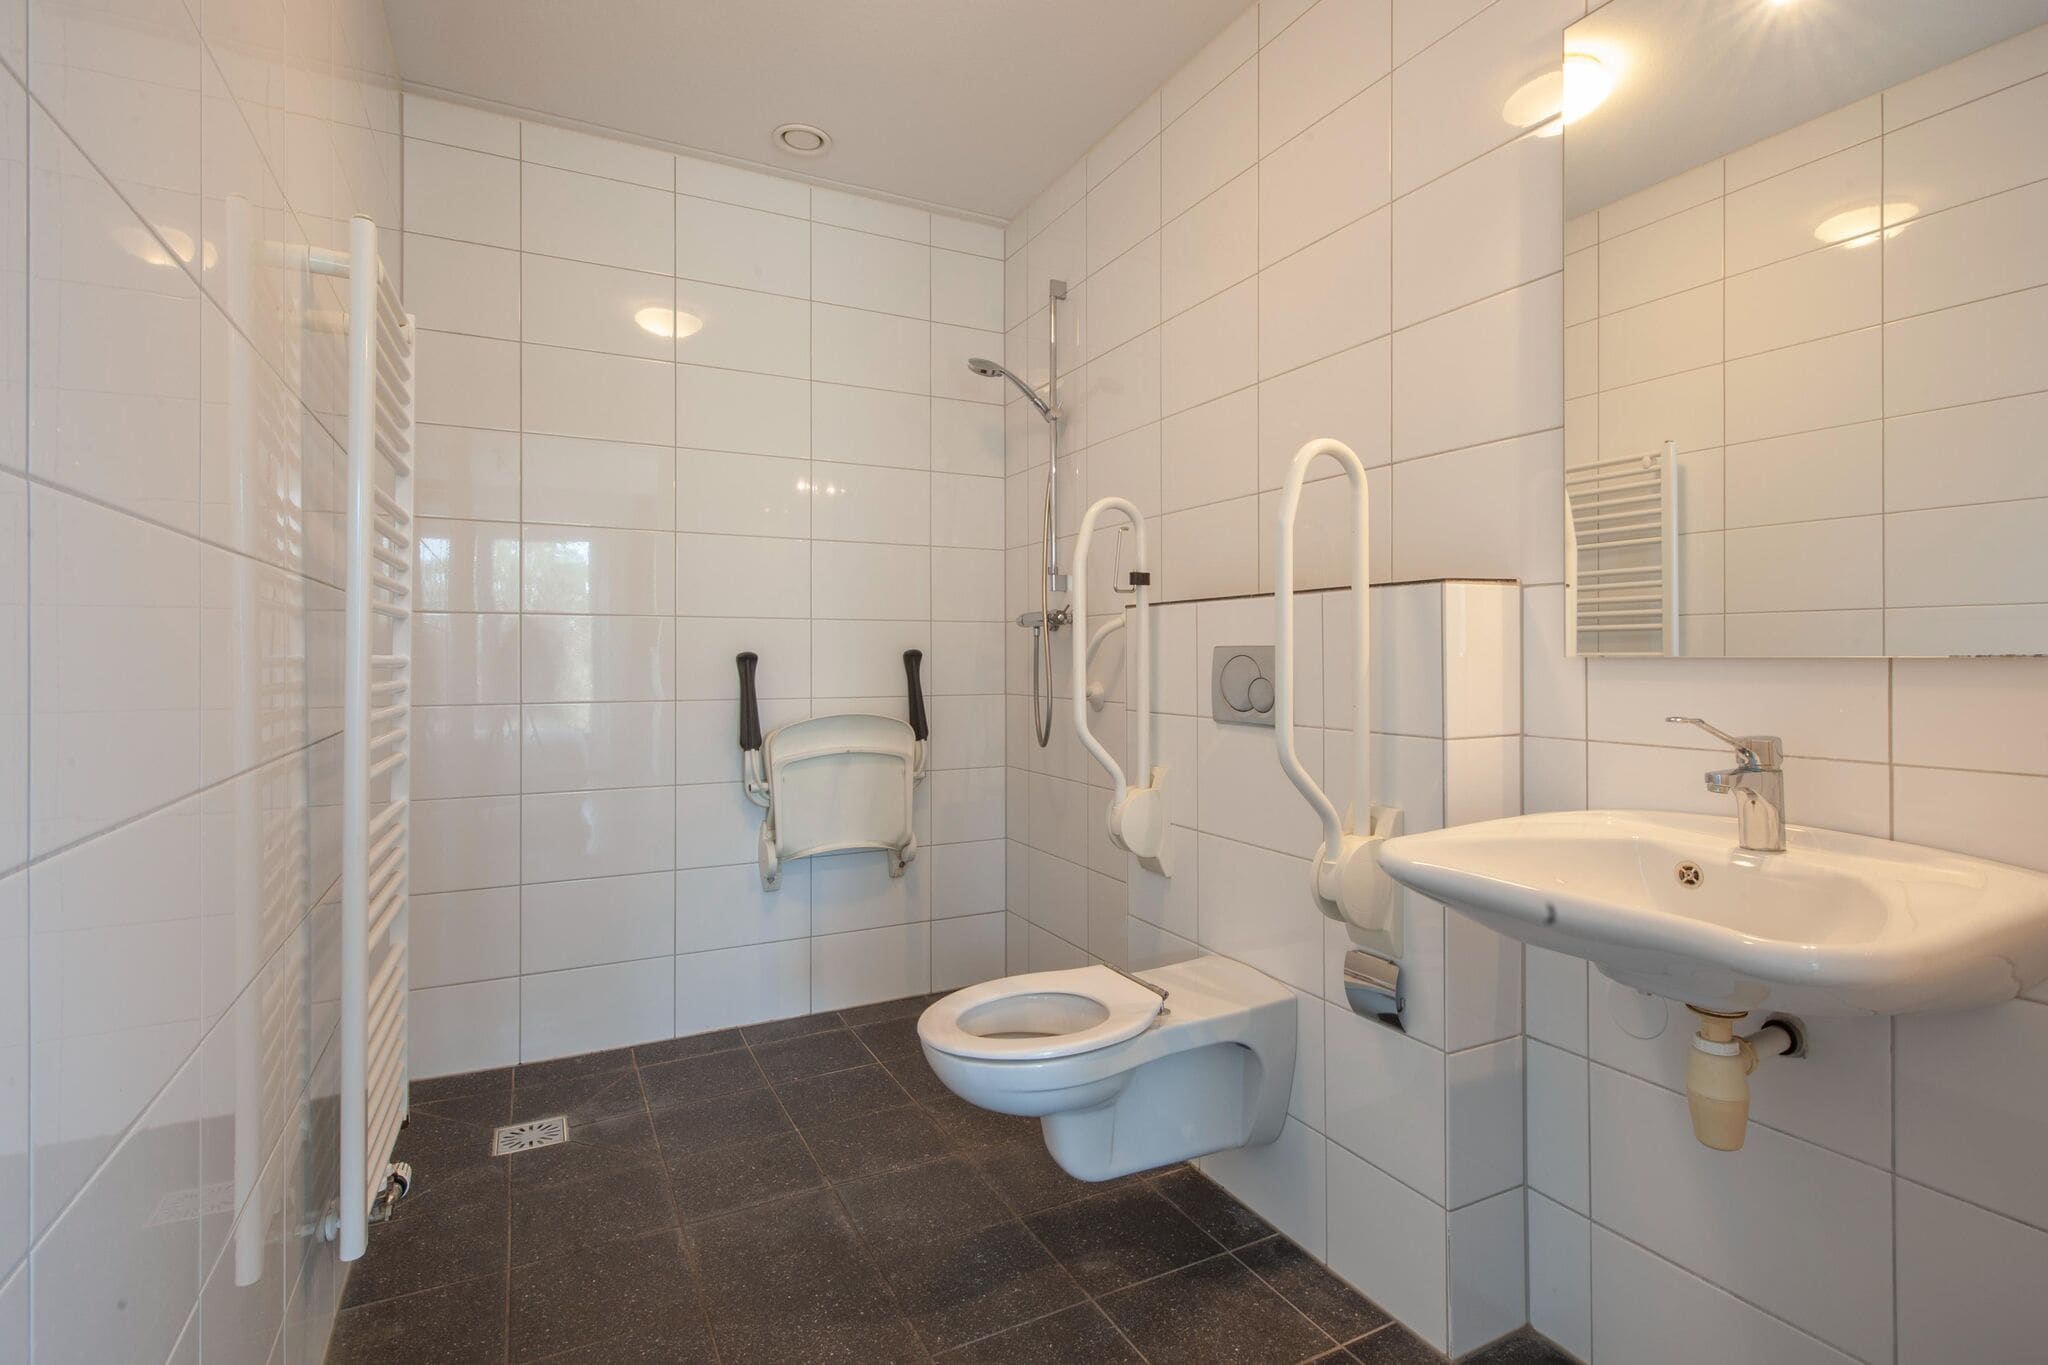 Gerestylde villa in Arcen met 5 badkamers